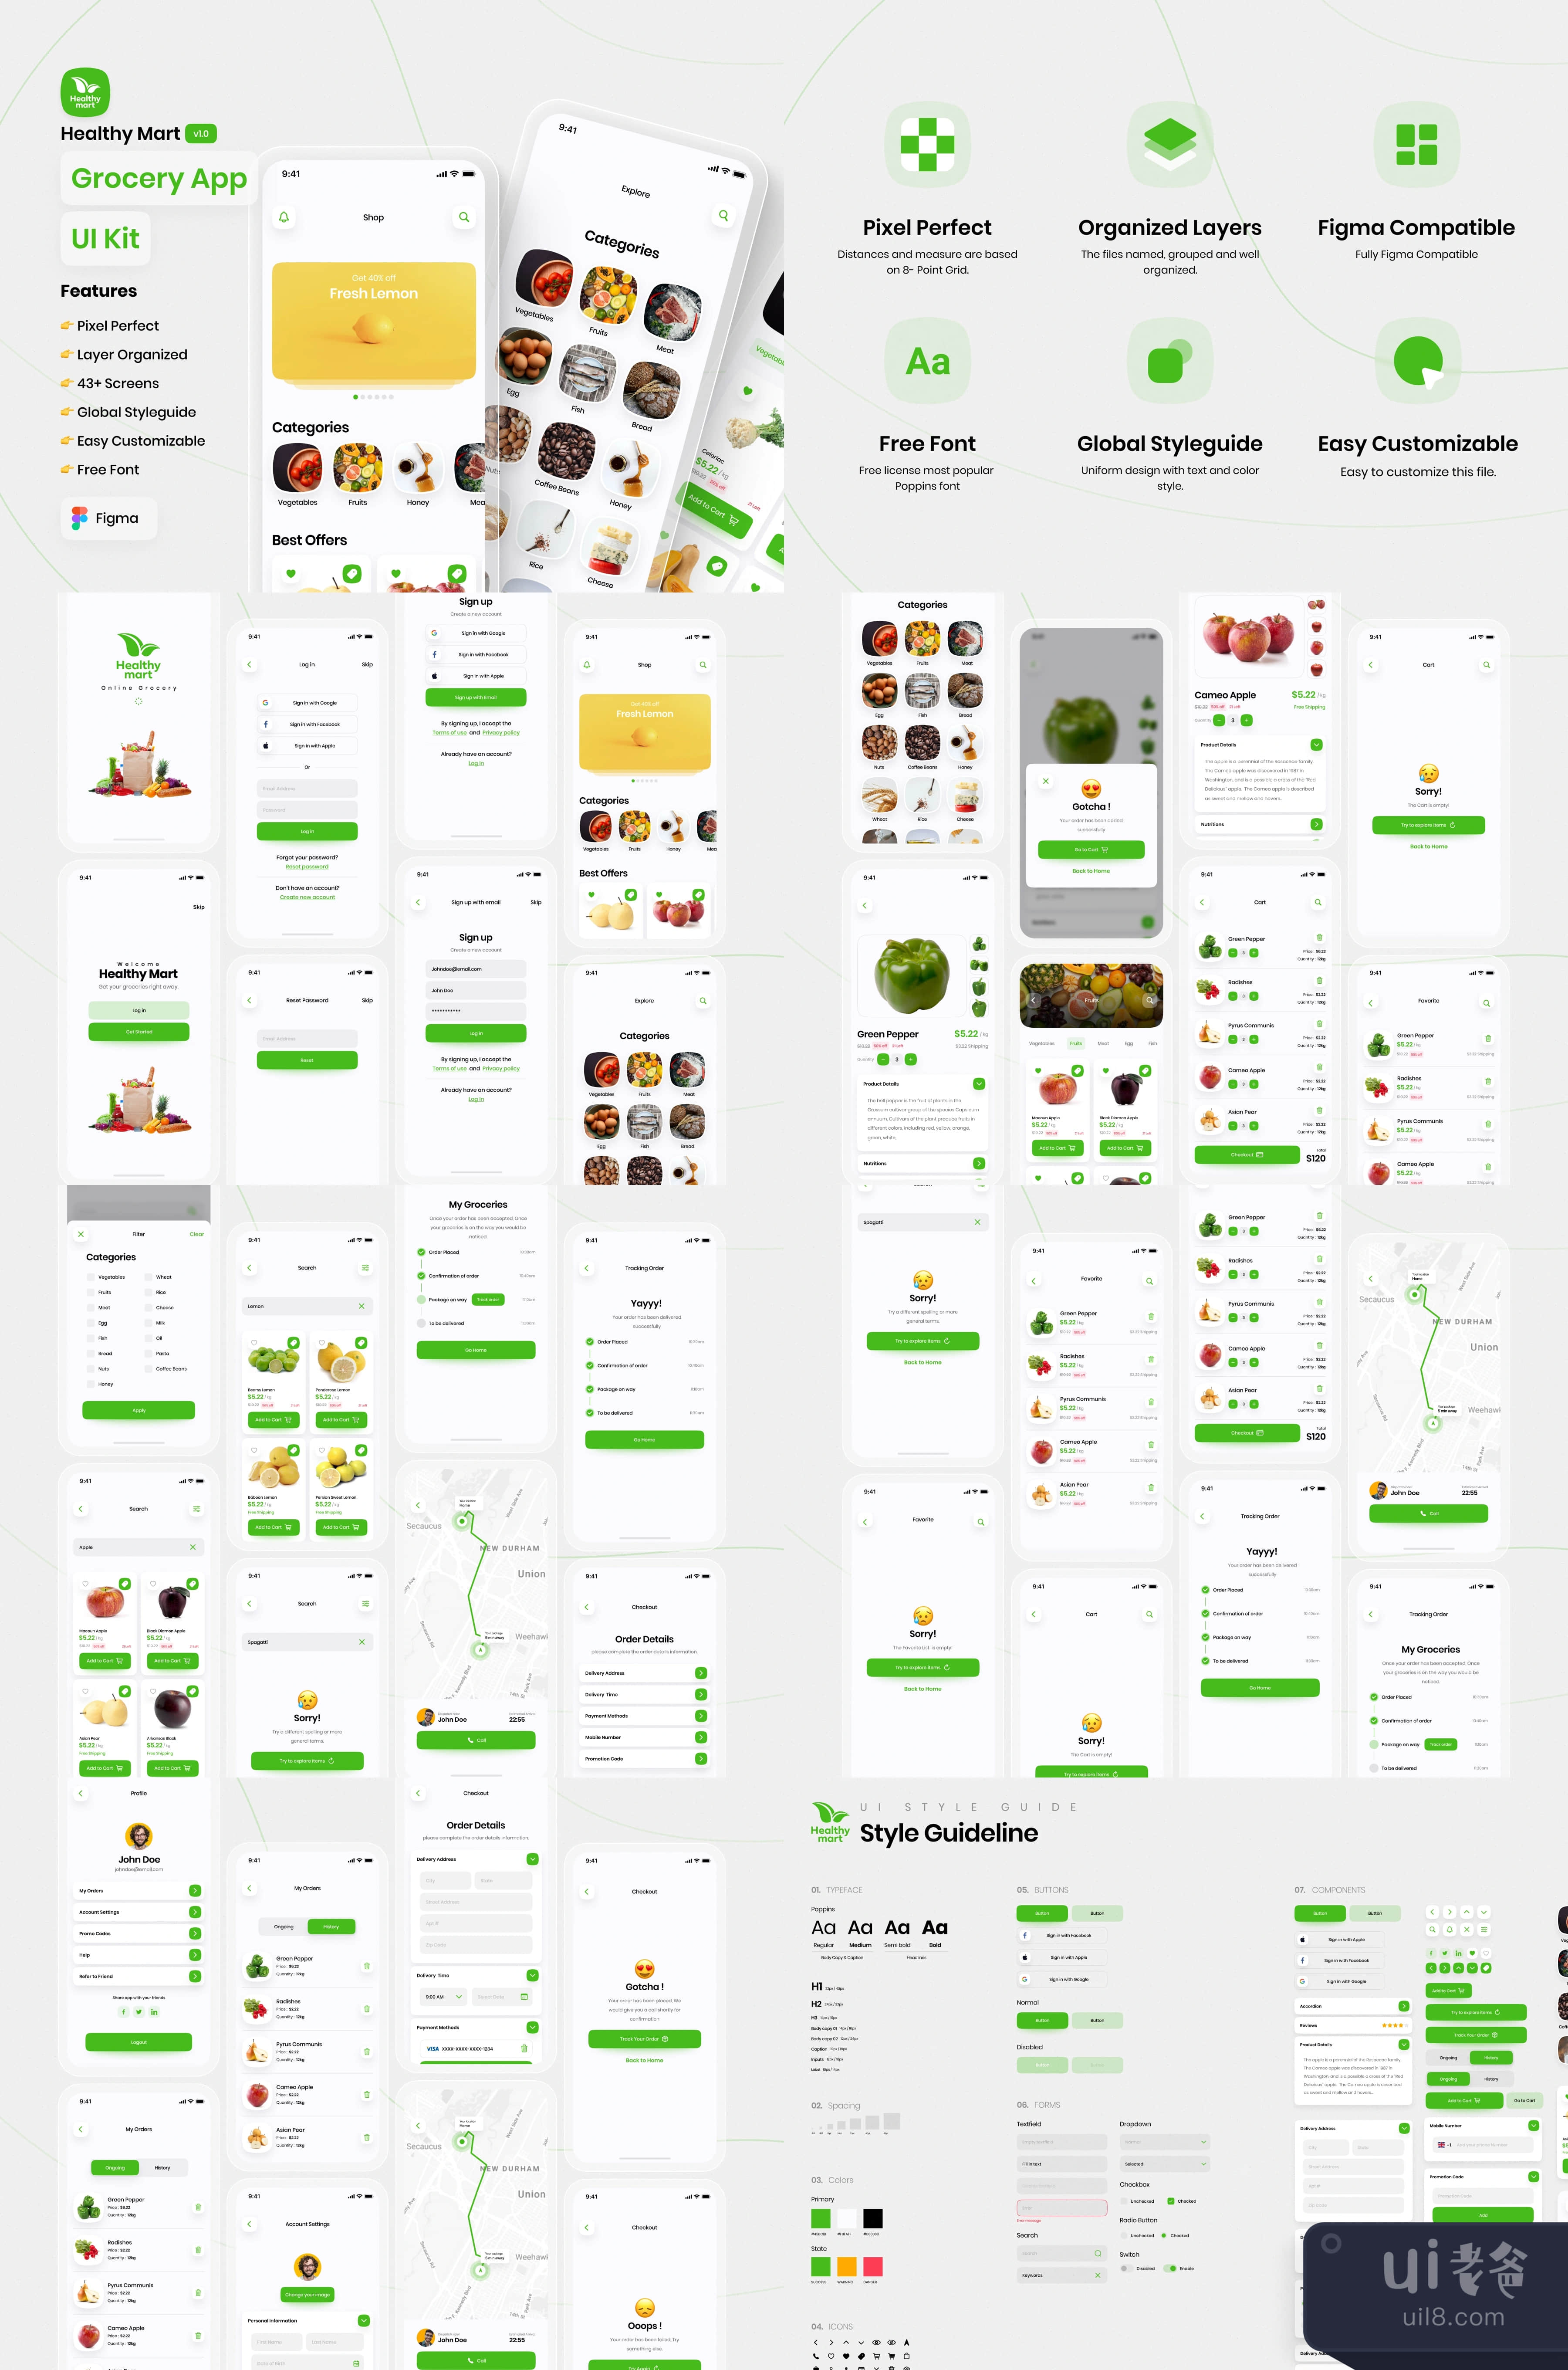 健康超市 - 杂货店应用UI设计套件 (Healthy Mart - Grocery App UI插图